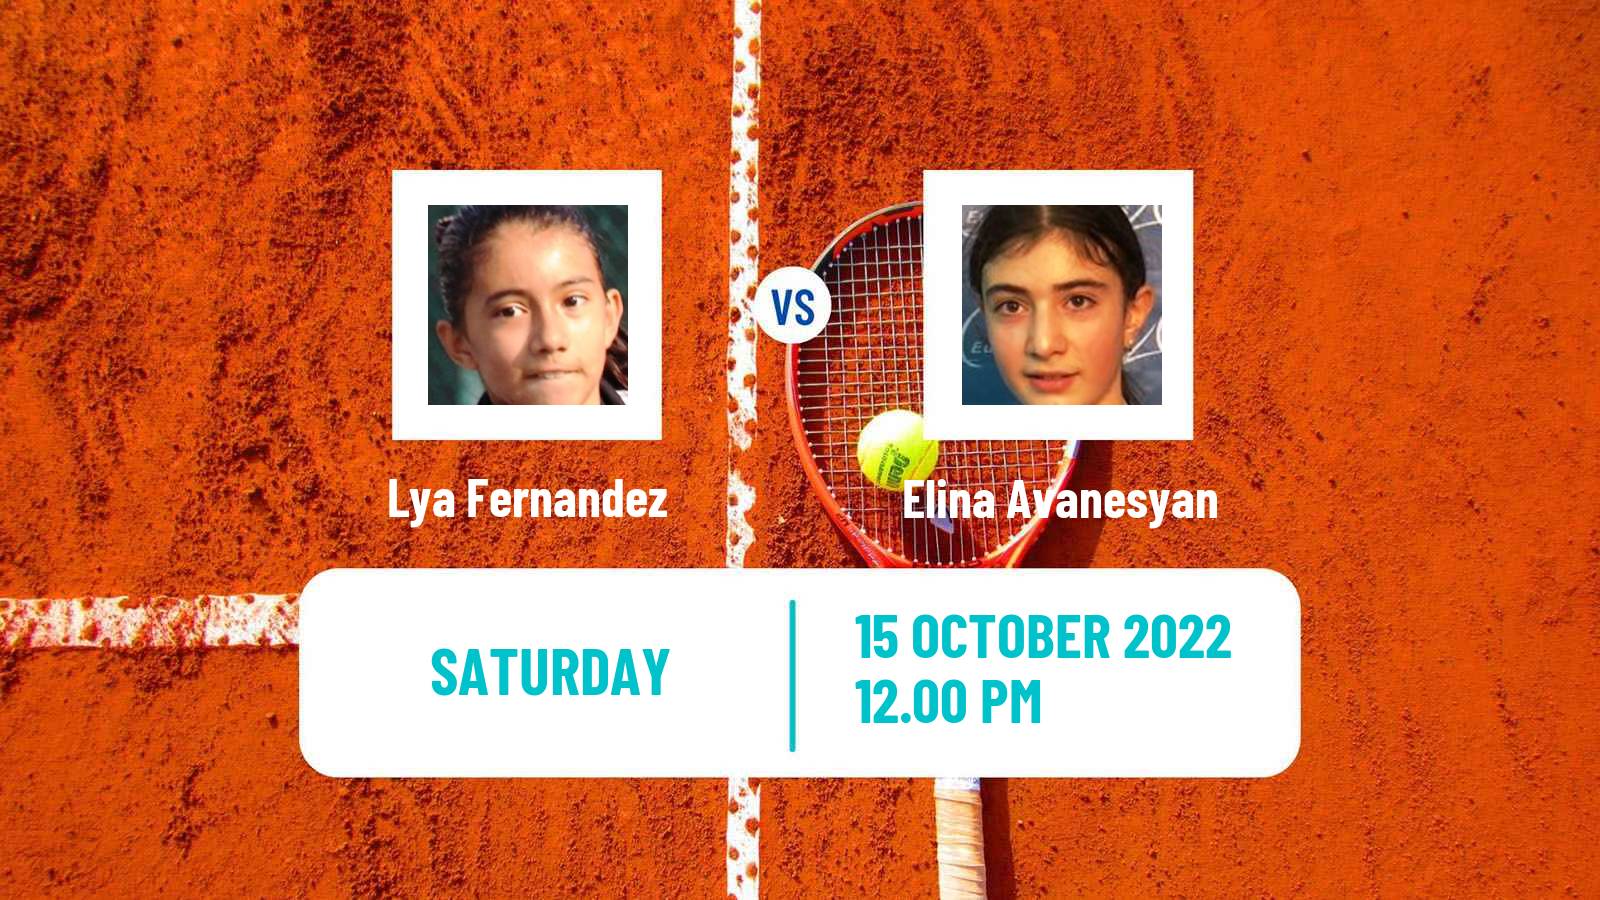 Tennis WTA Guadalajara 2 Lya Fernandez - Elina Avanesyan